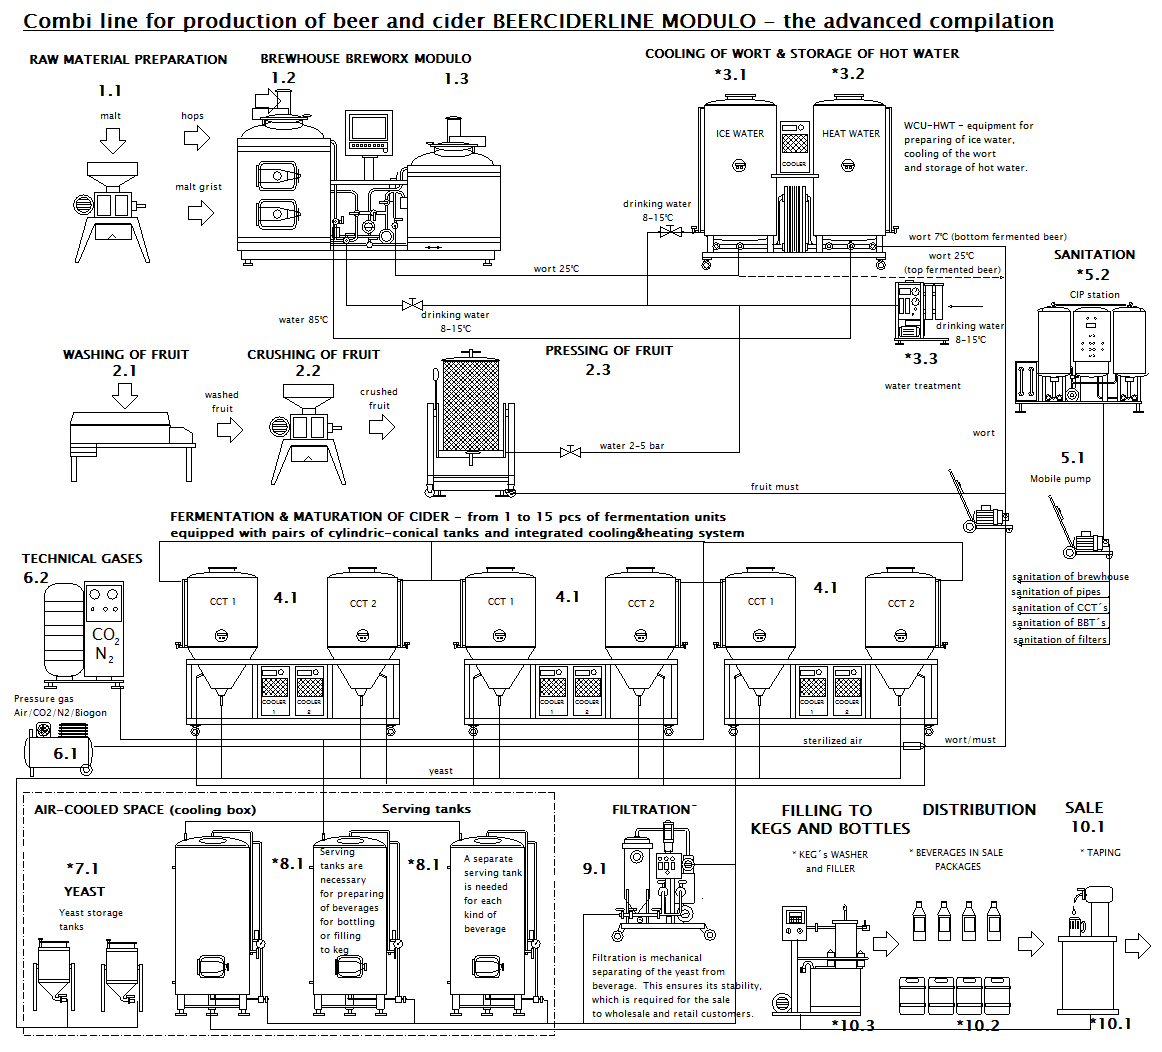 BeerCiderLine Modulo - technical scheme